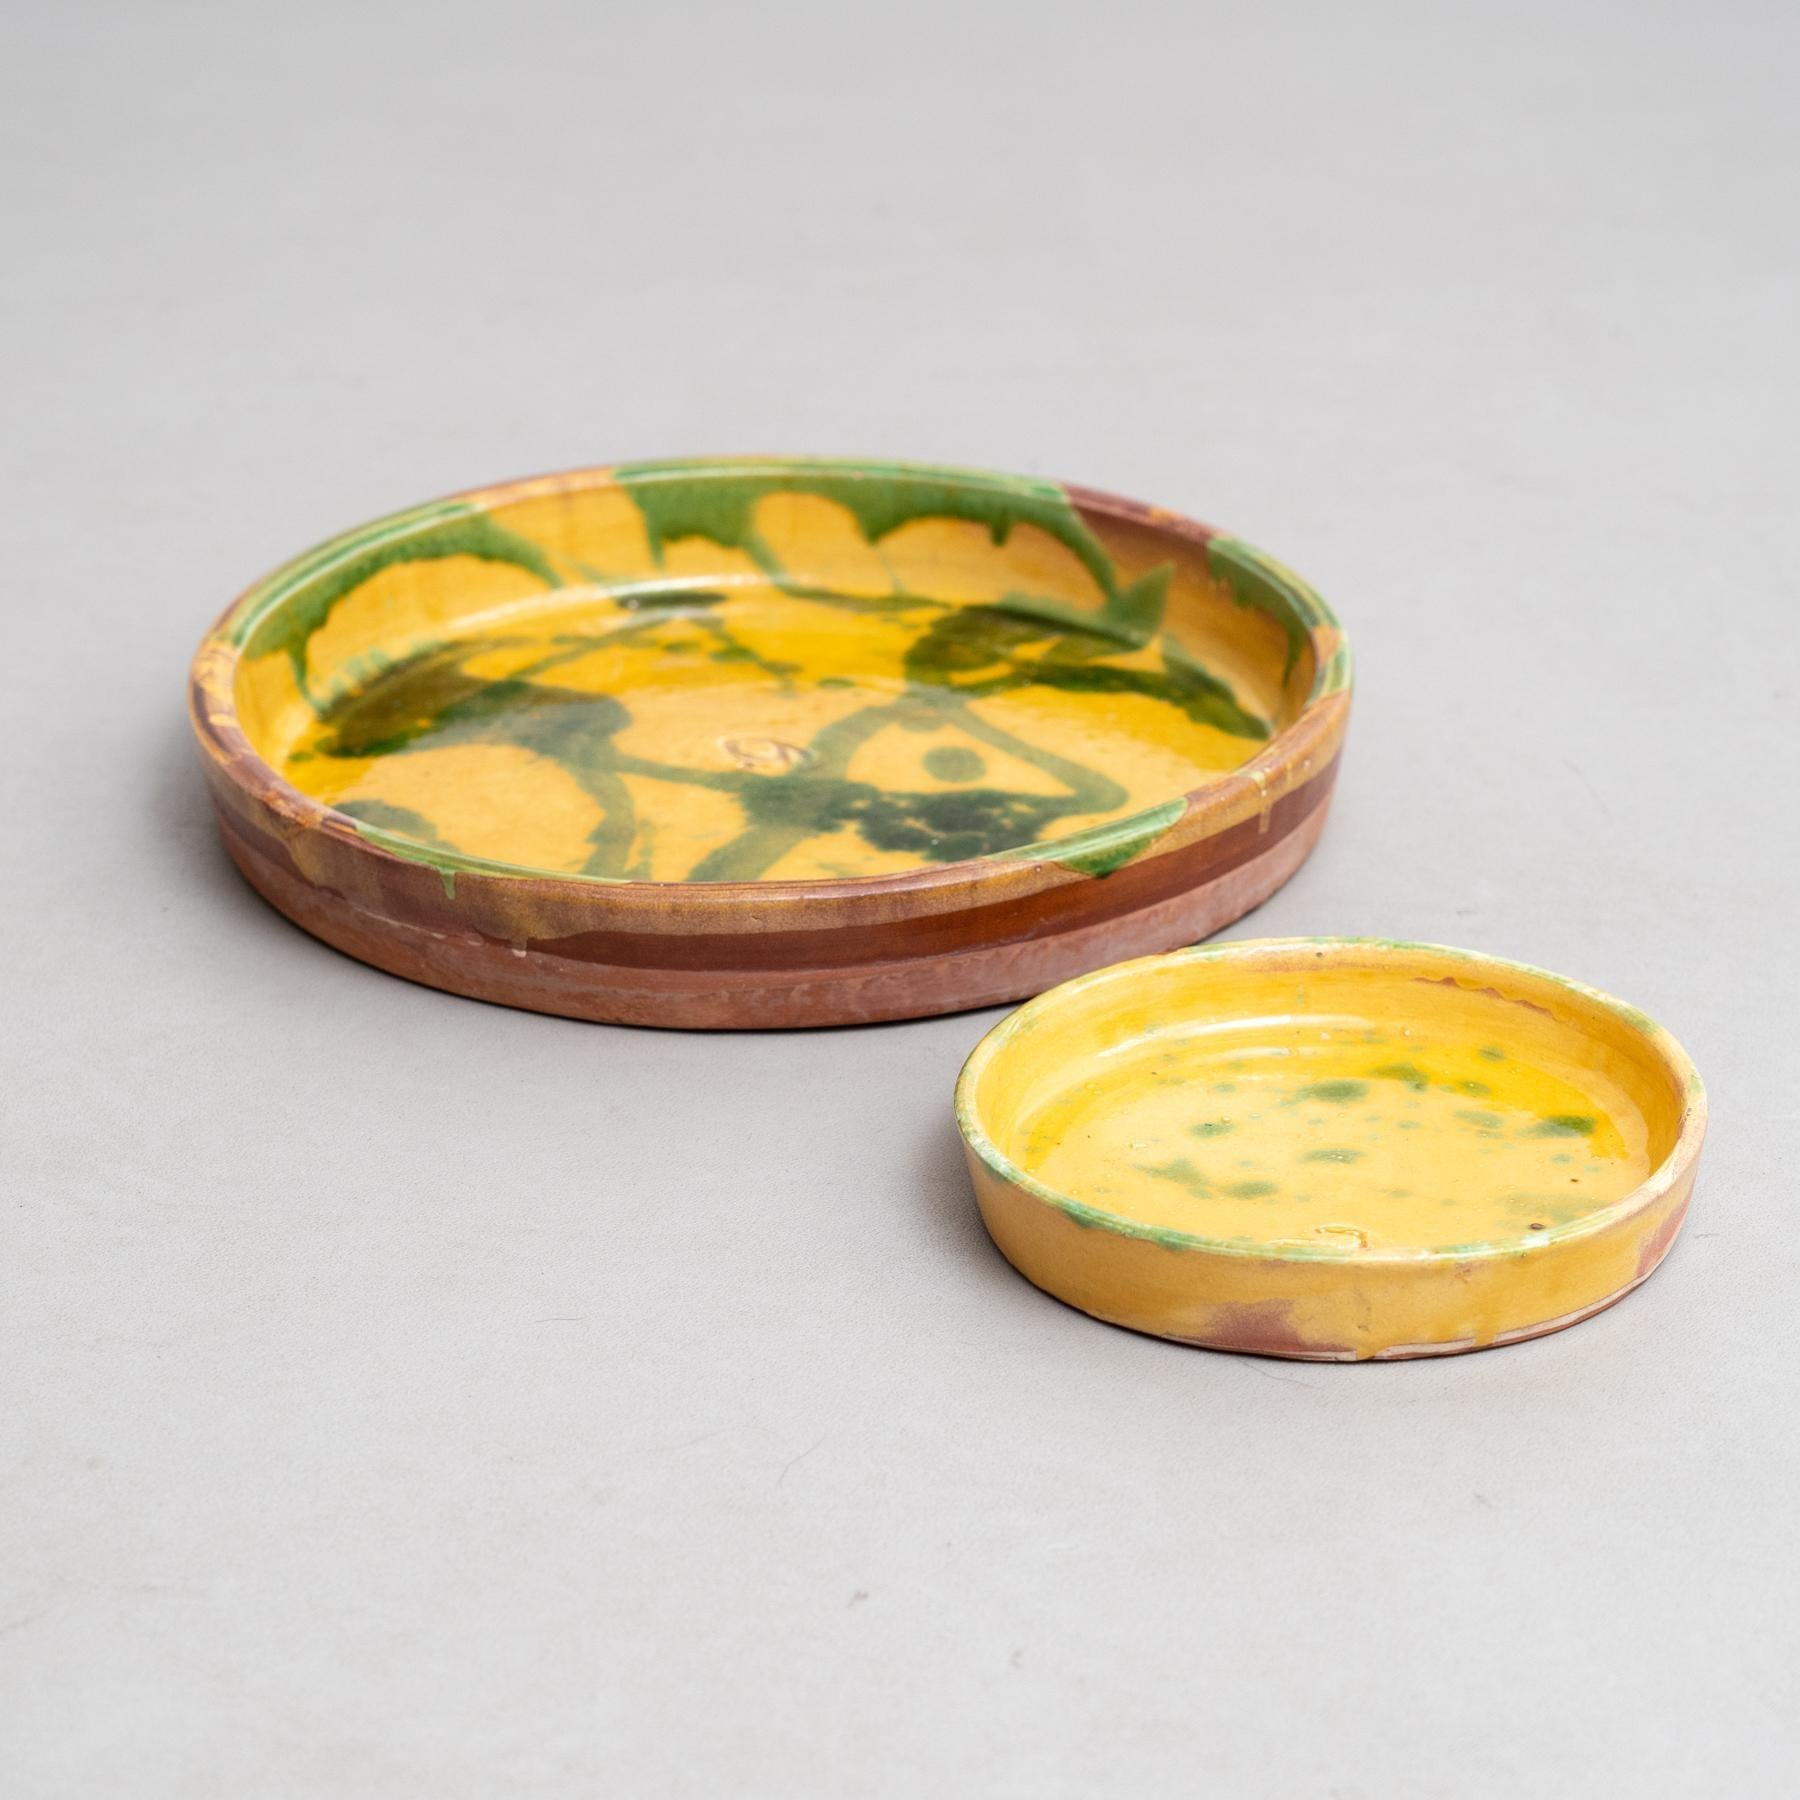 Dieses Set aus zwei gelben Keramiktellern mit charmanten grünen Sprenkeln erinnert an die traditionelle Volkskeramik des frühen 20. Jedes Stück, das sorgfältig von Hand bemalt wurde, spiegelt die Handwerkskunst eines unbekannten Kunsthandwerkers in